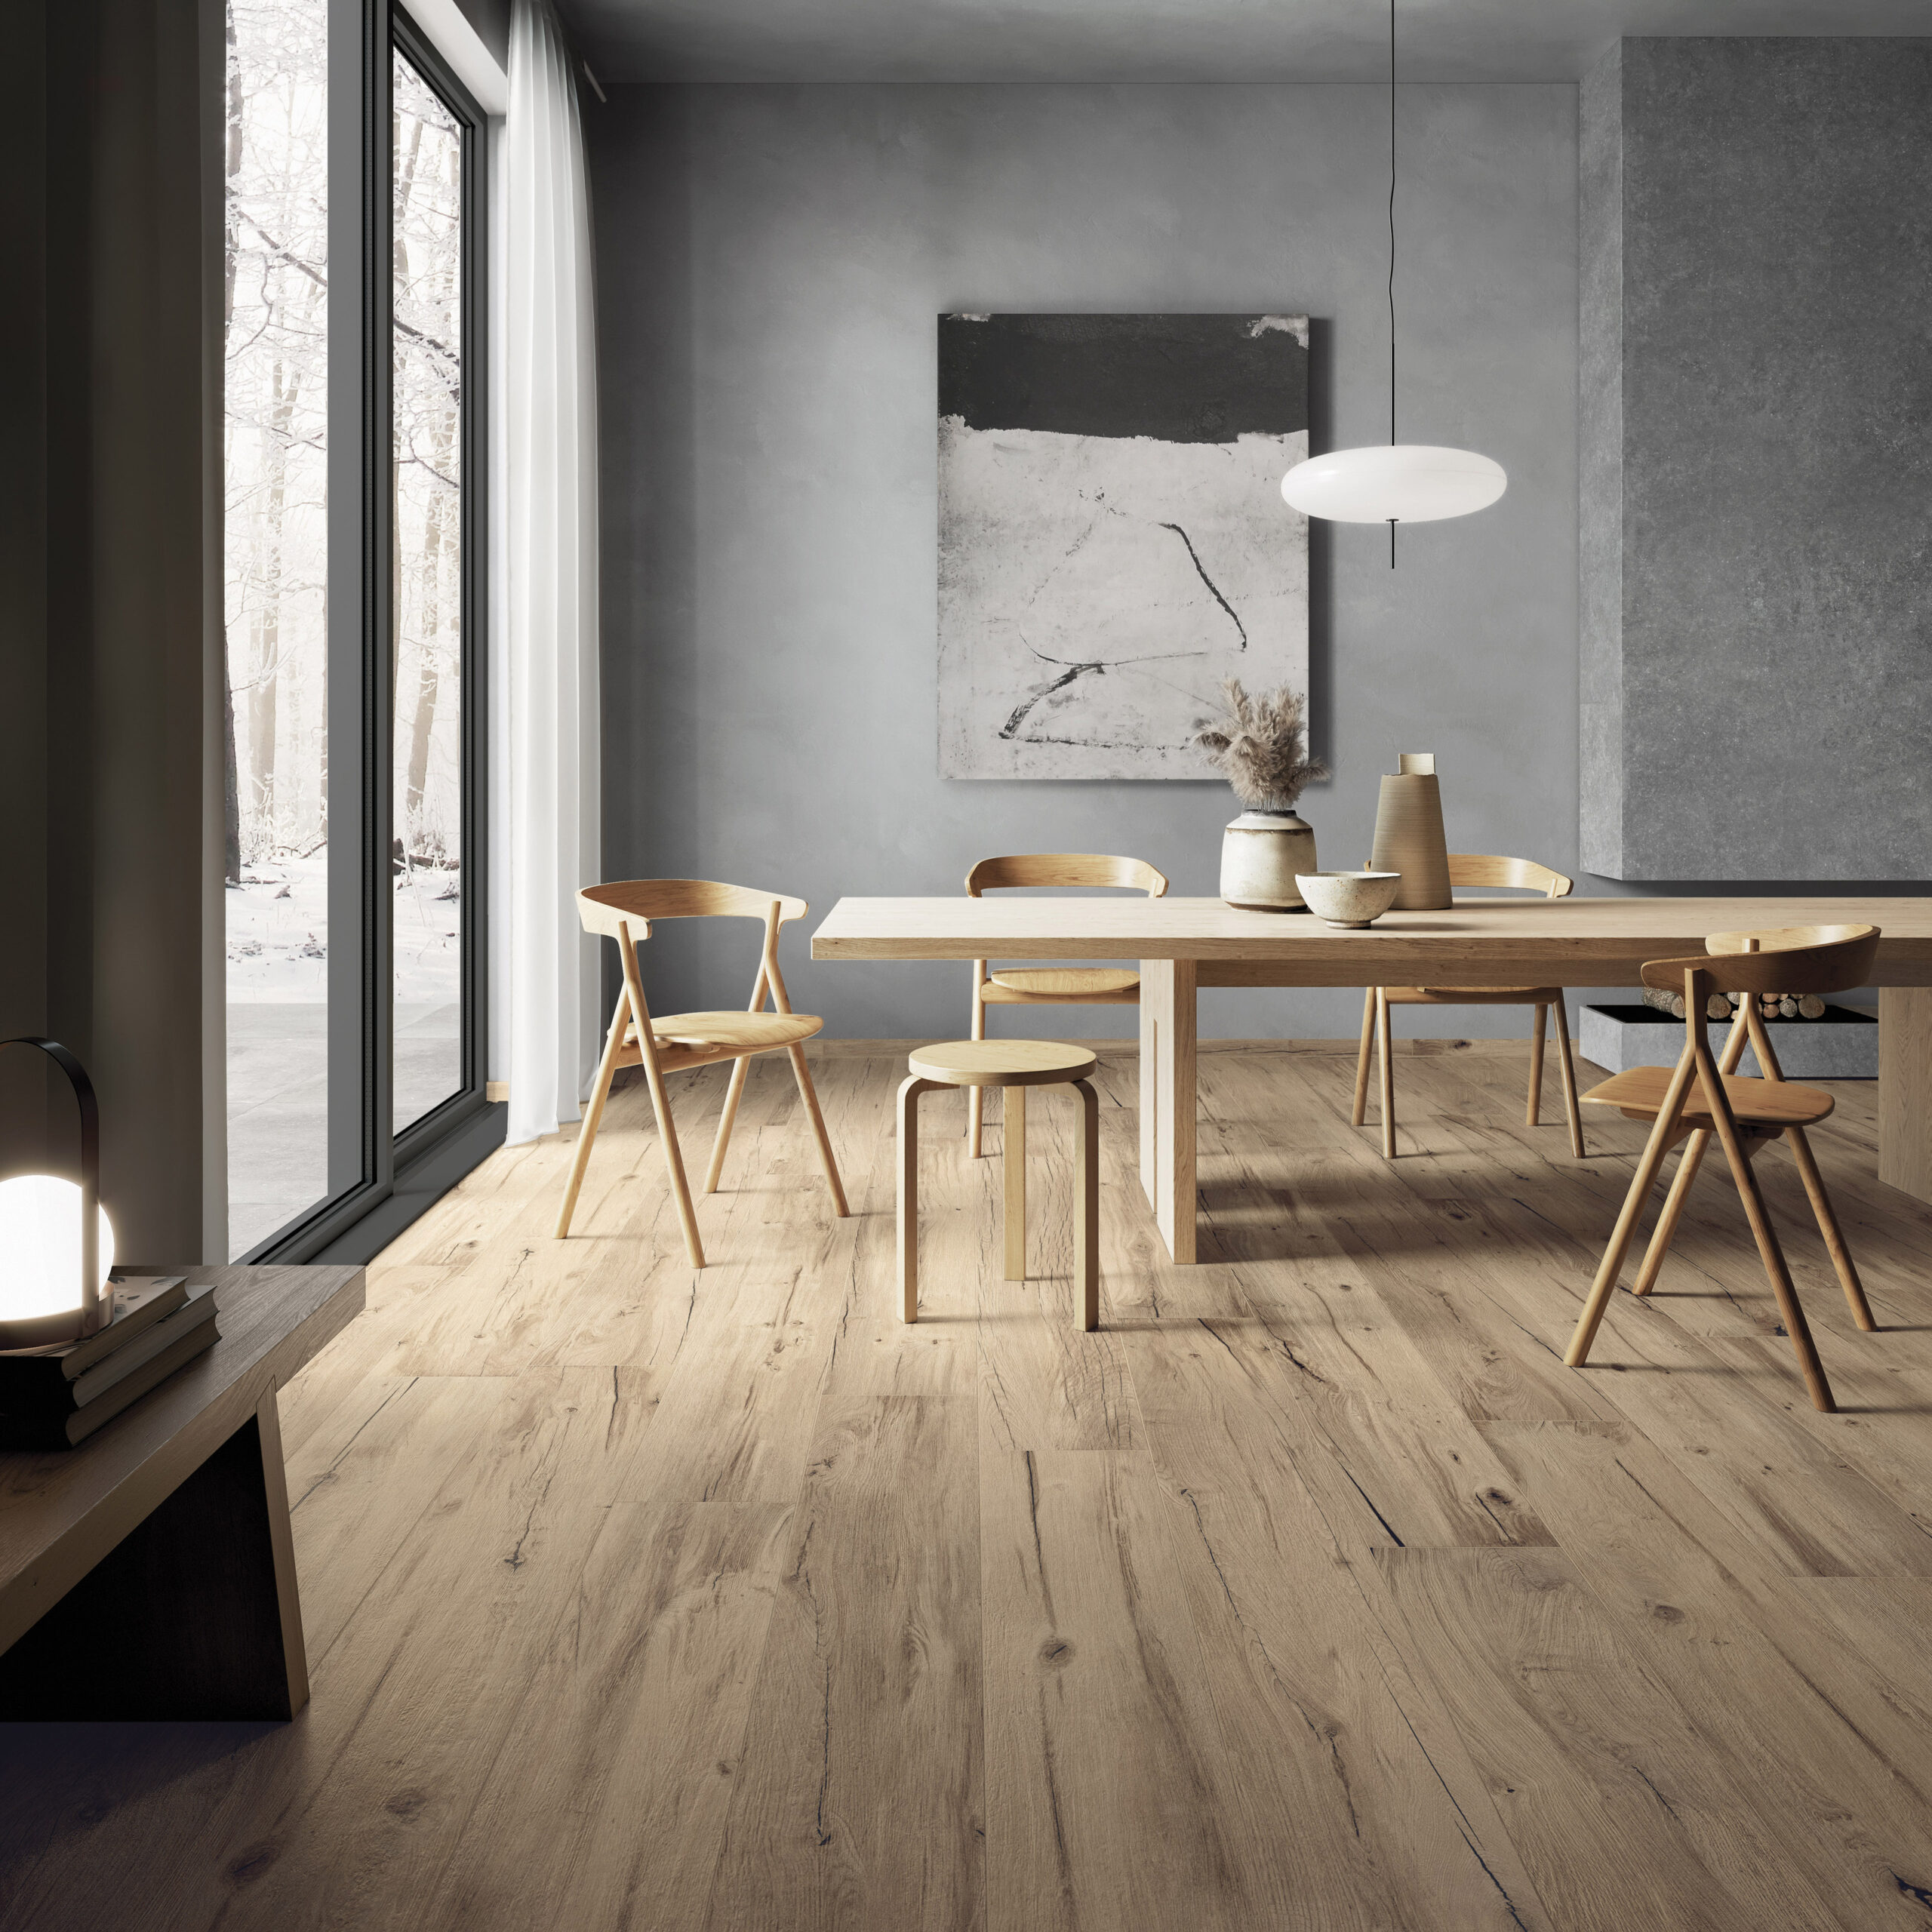 A madeira é um elemento versátil que pode aparecer em pisos, paredes e móveis. Também ser combinada com outros itens mais modernos e urbanos, como o cimentício